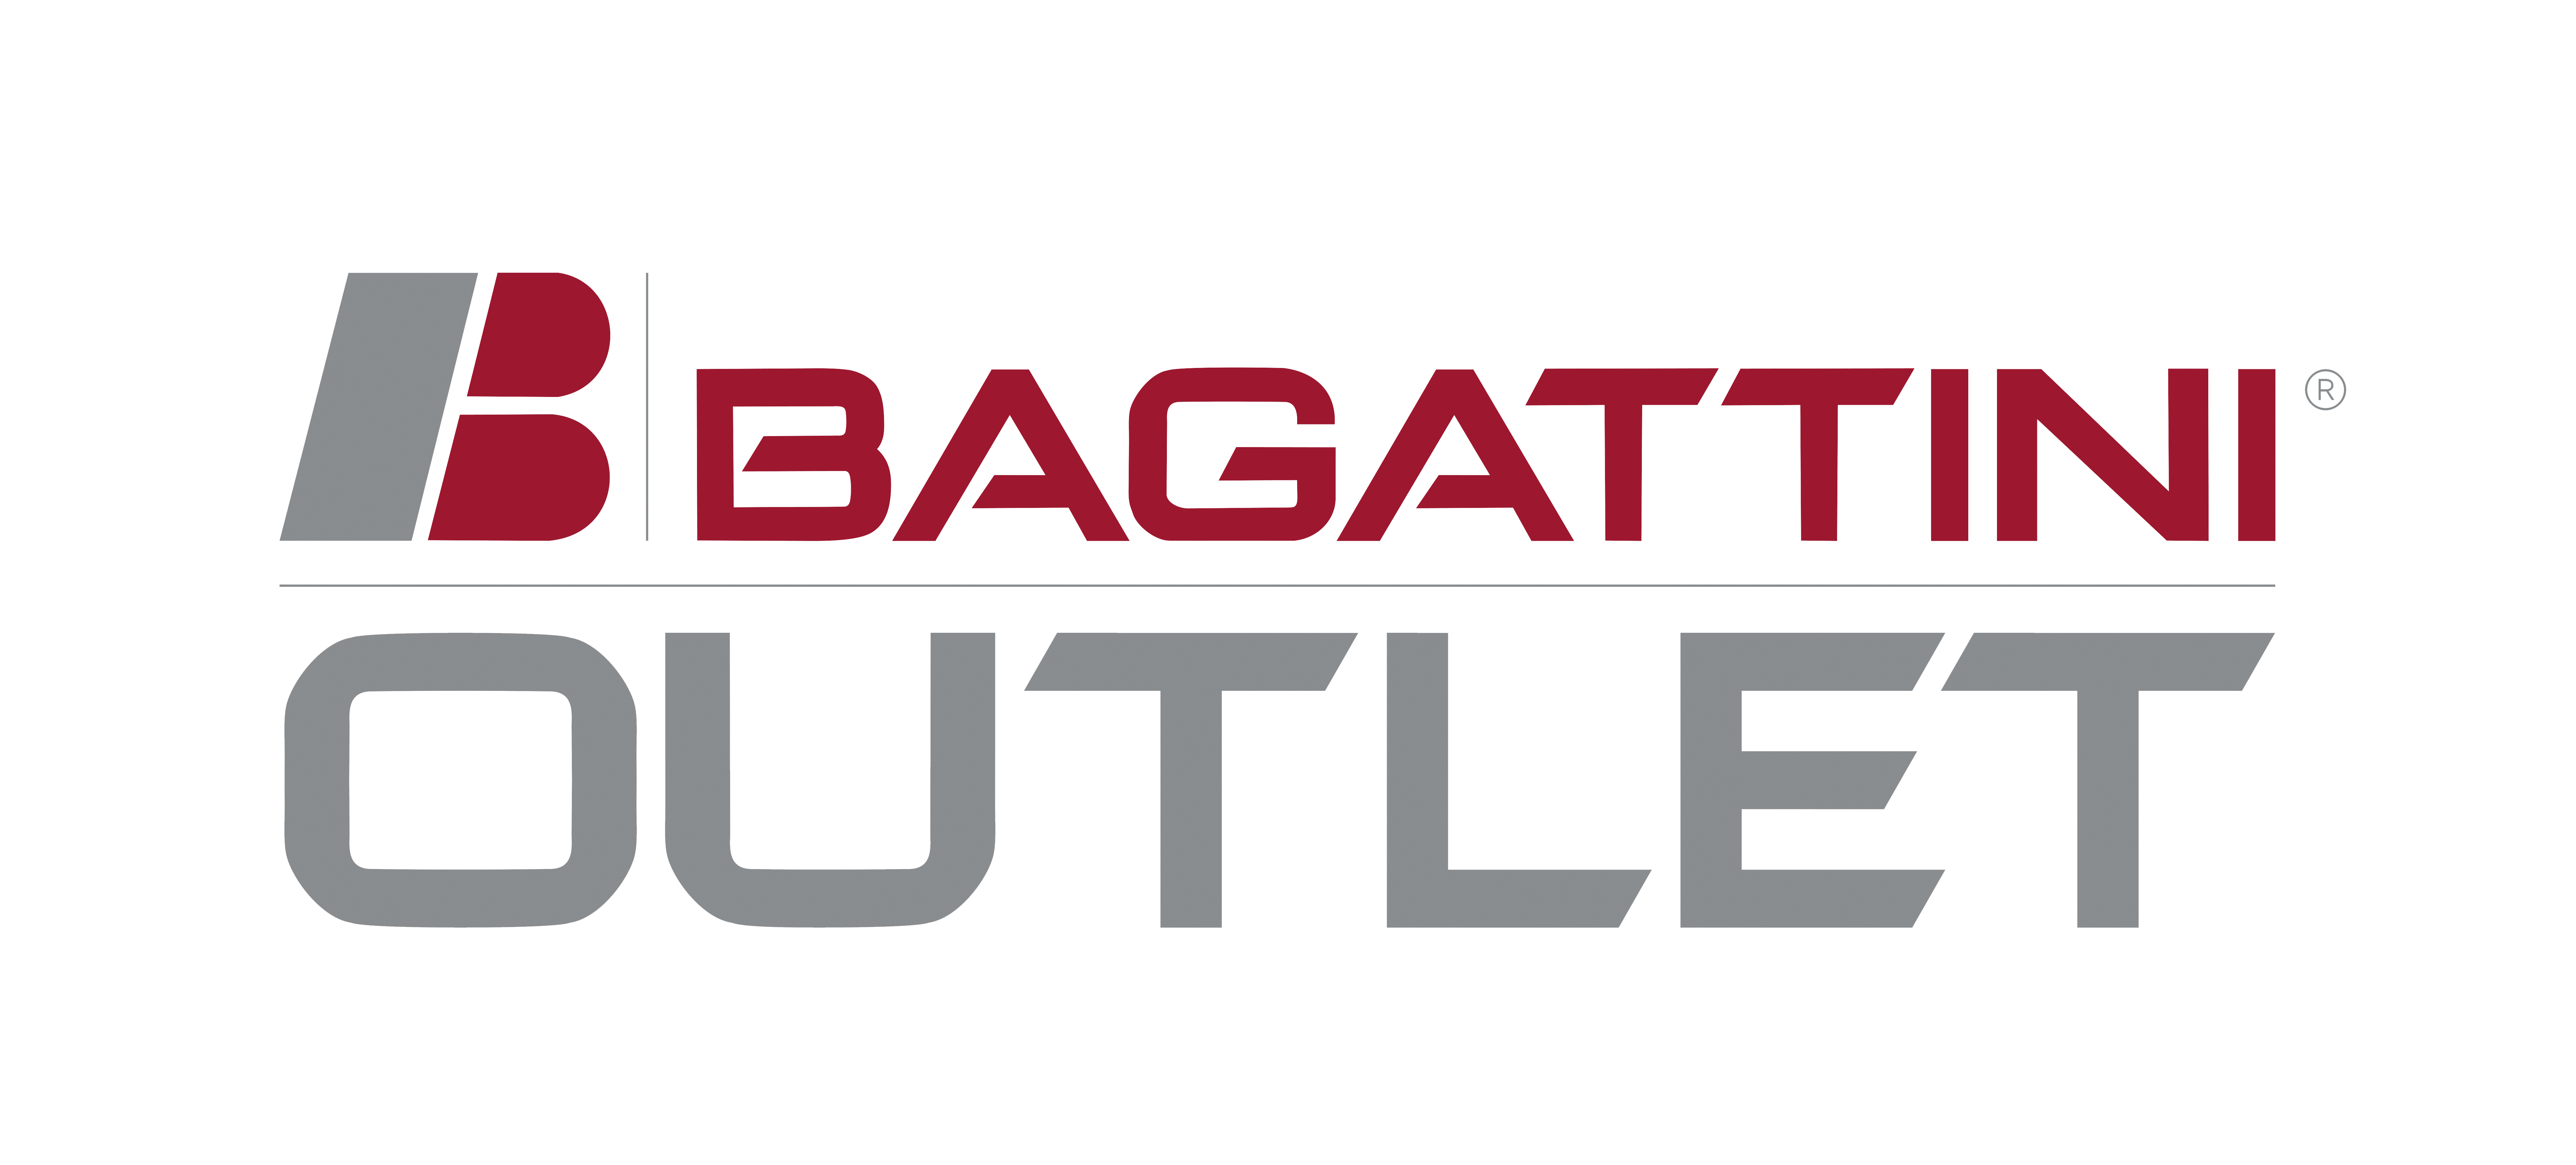 Bagattini Outlet Shop